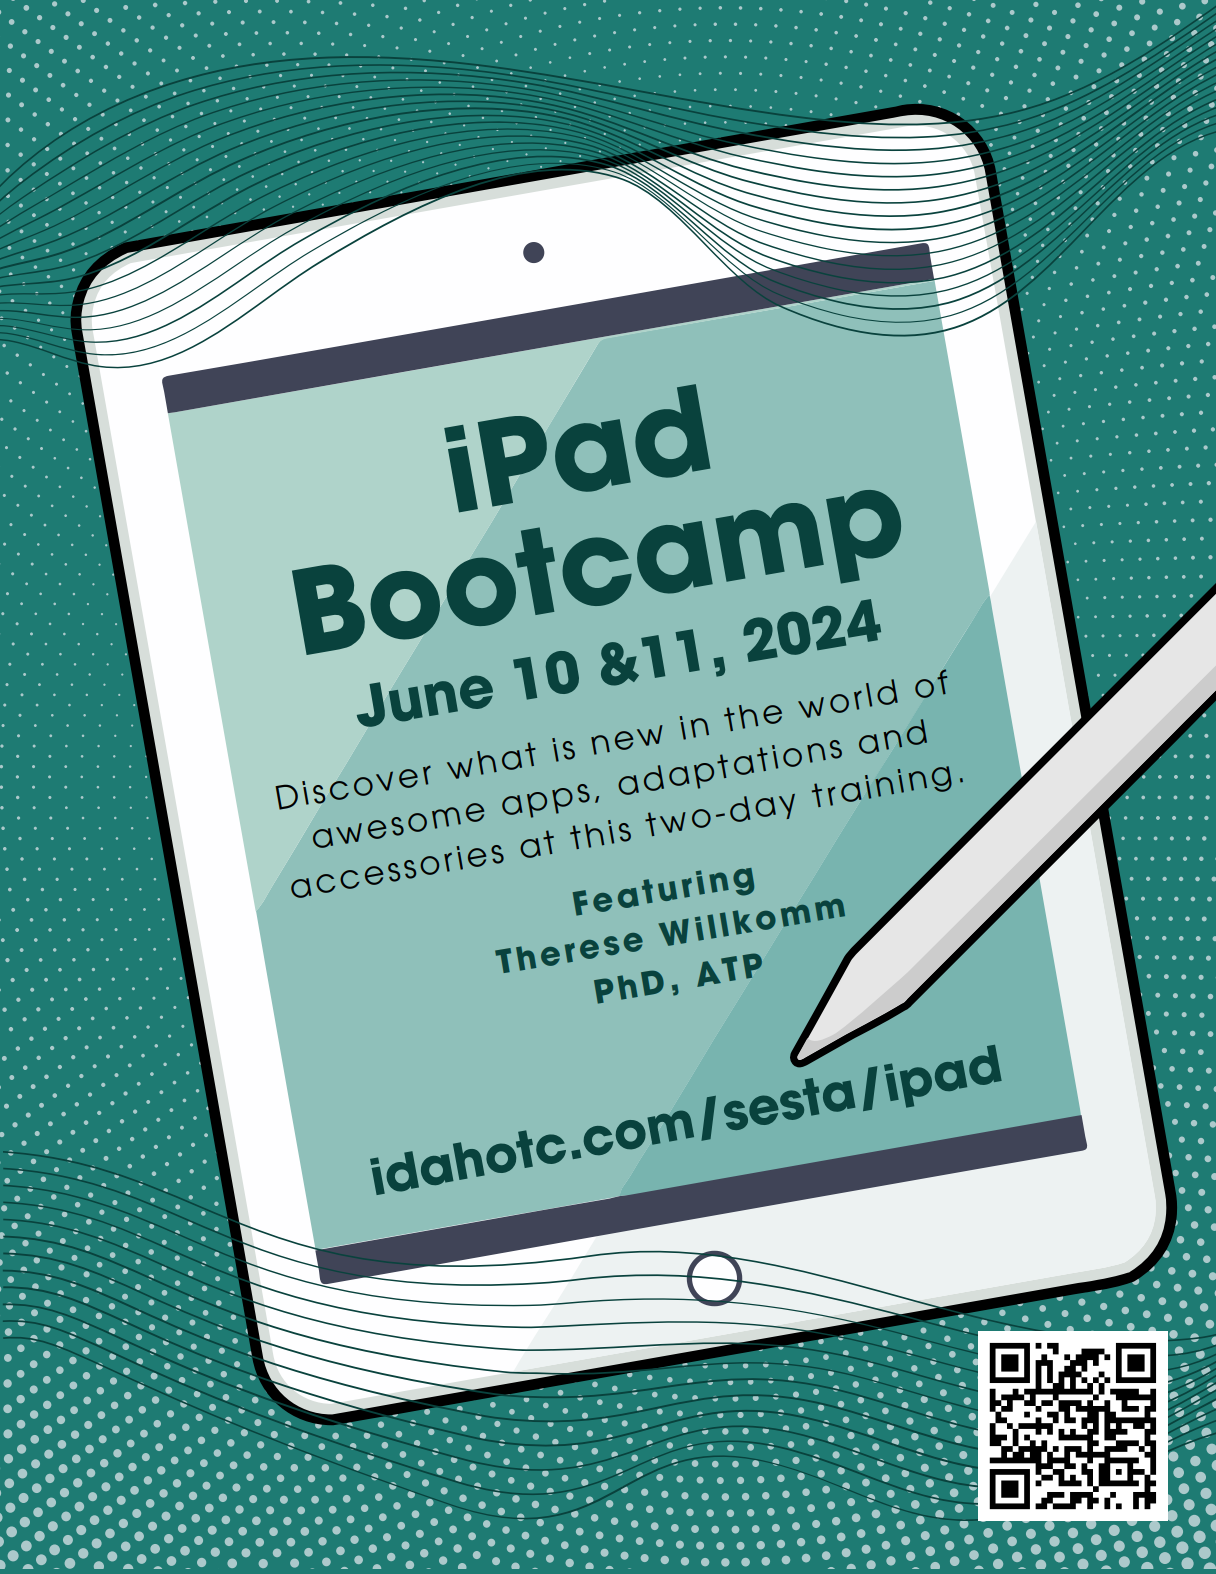 ipad bootcamp flyer